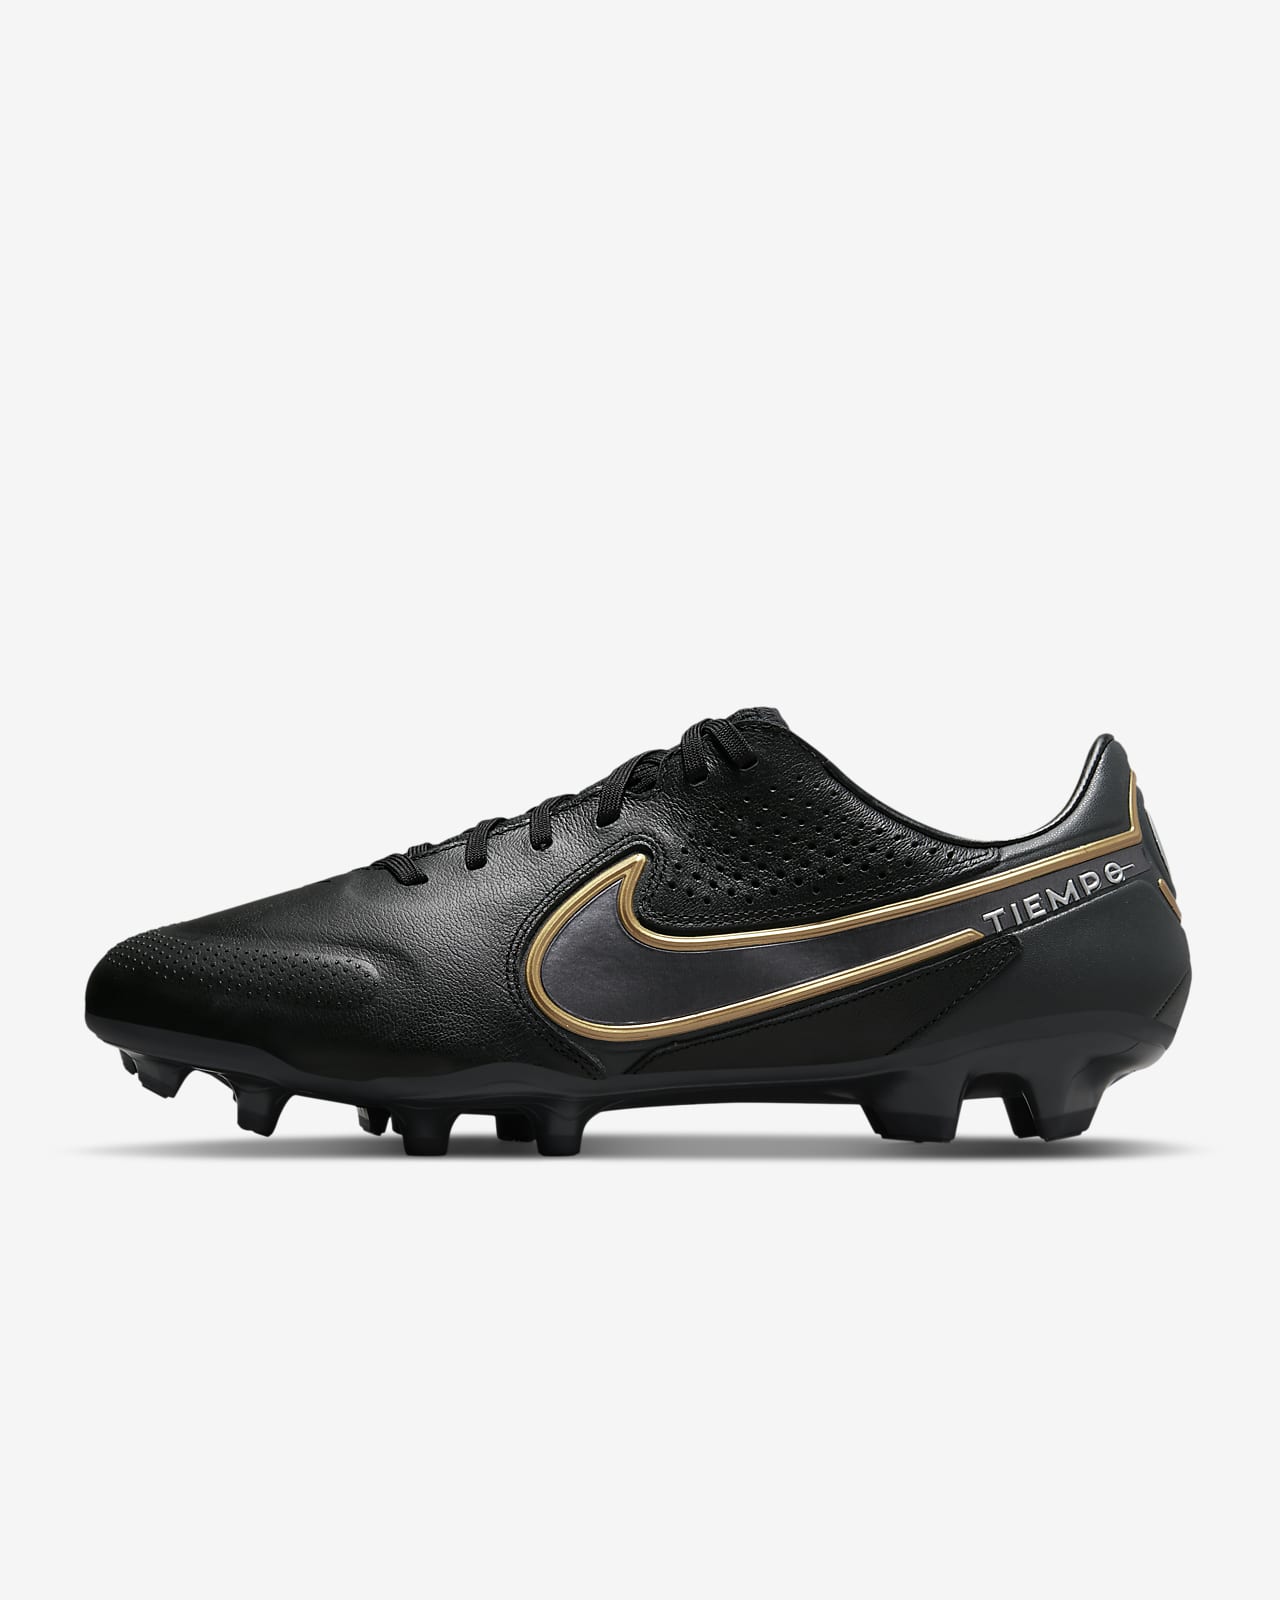 Ποδοσφαιρικό παπούτσι για σκληρές επιφάνειες Nike Tiempo Legend 9 Pro FG